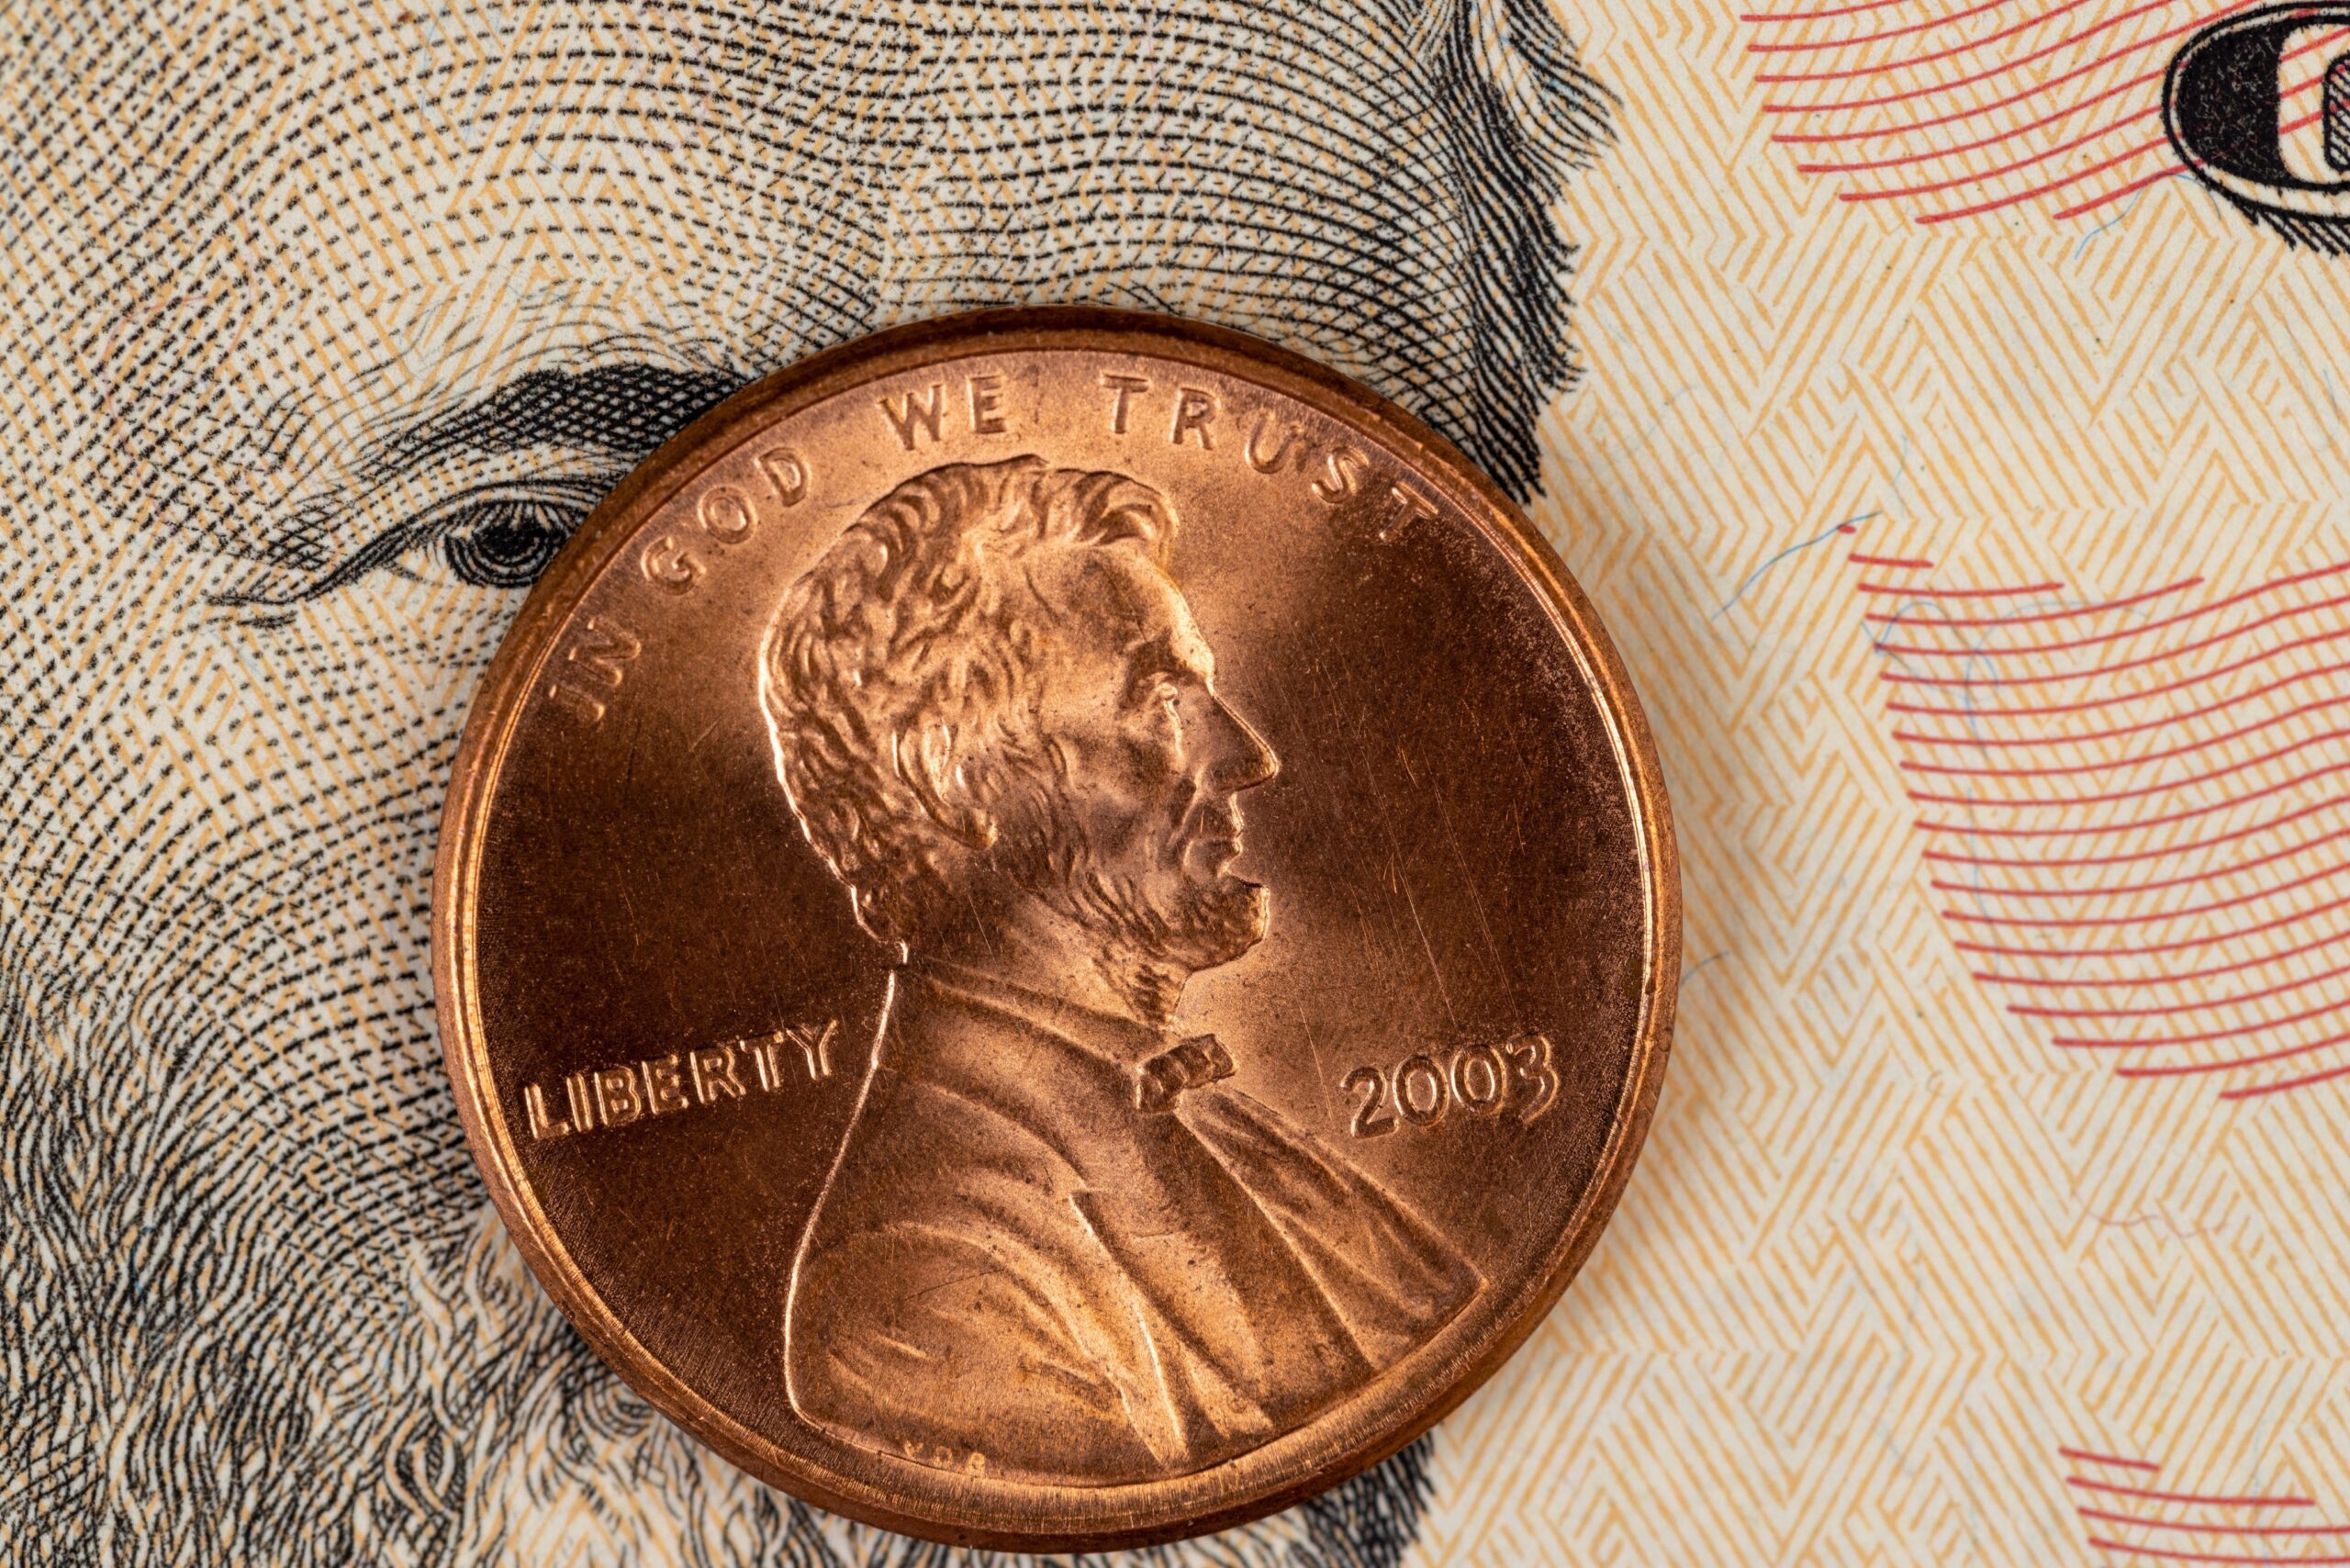 Monedas de 1 centavo podrían valer hasta $7,000 dólares – El Diario NY